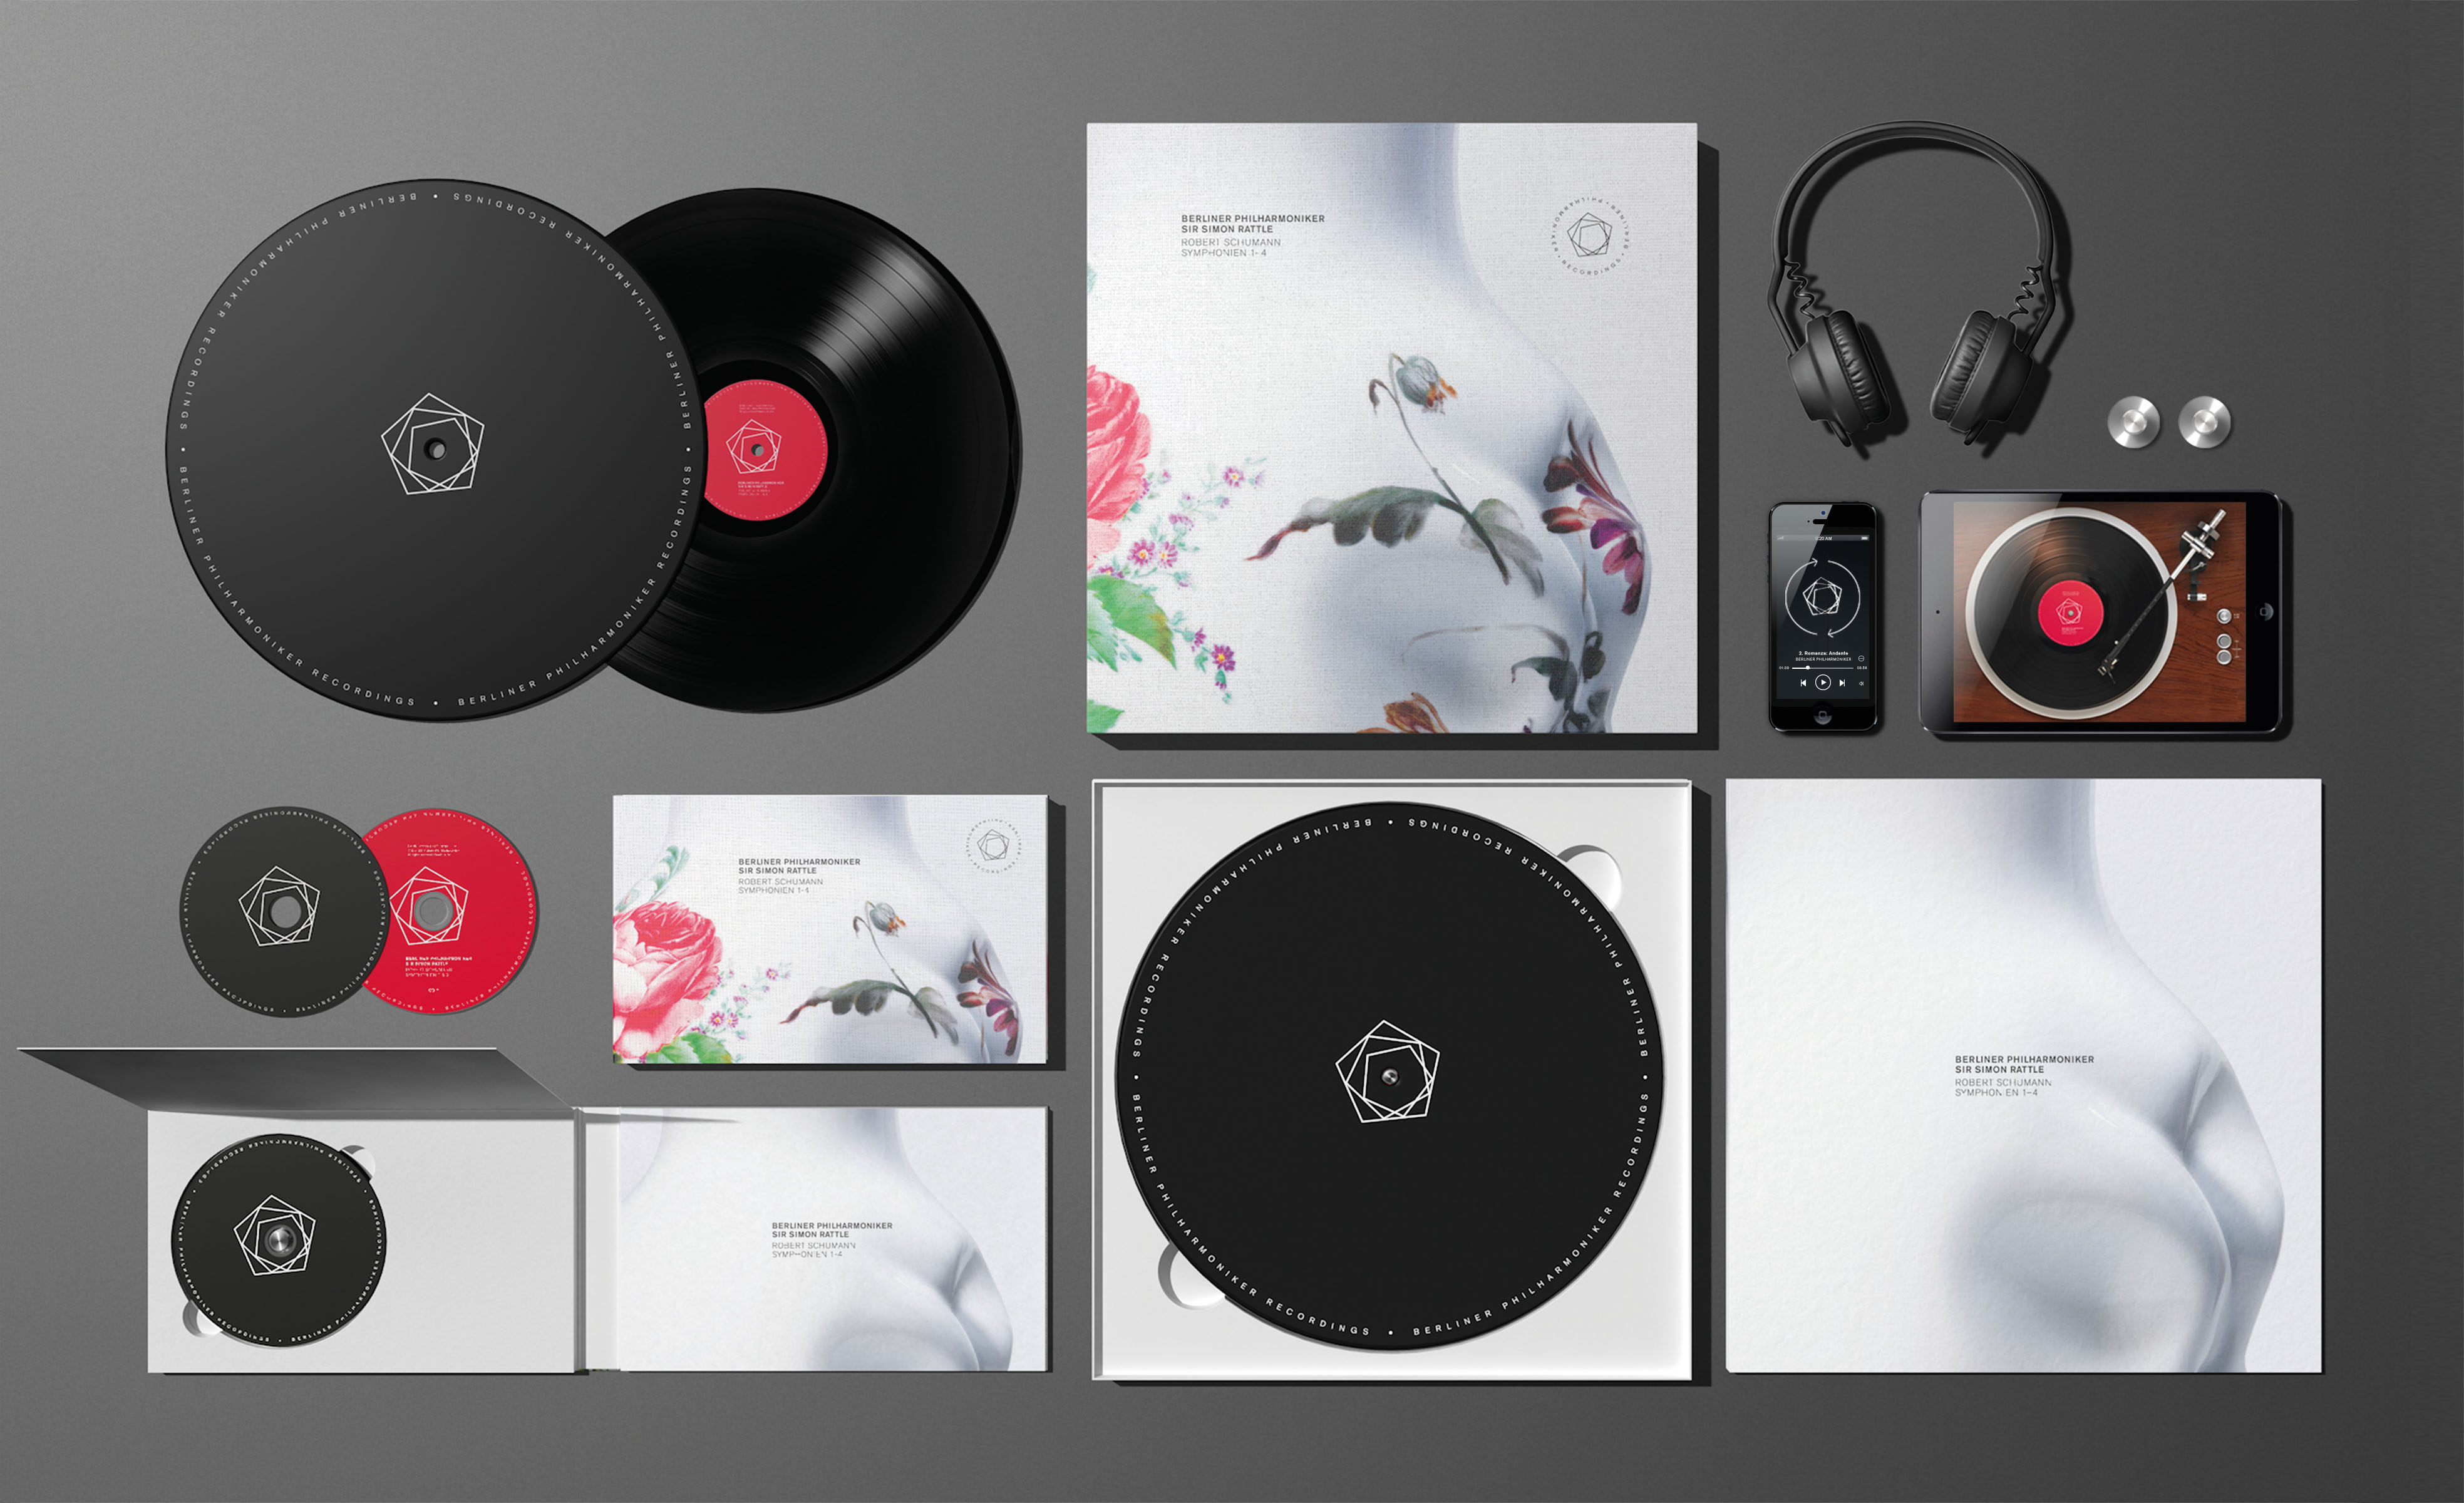 黑胶唱片包装设计 红点包装设计奖2014年